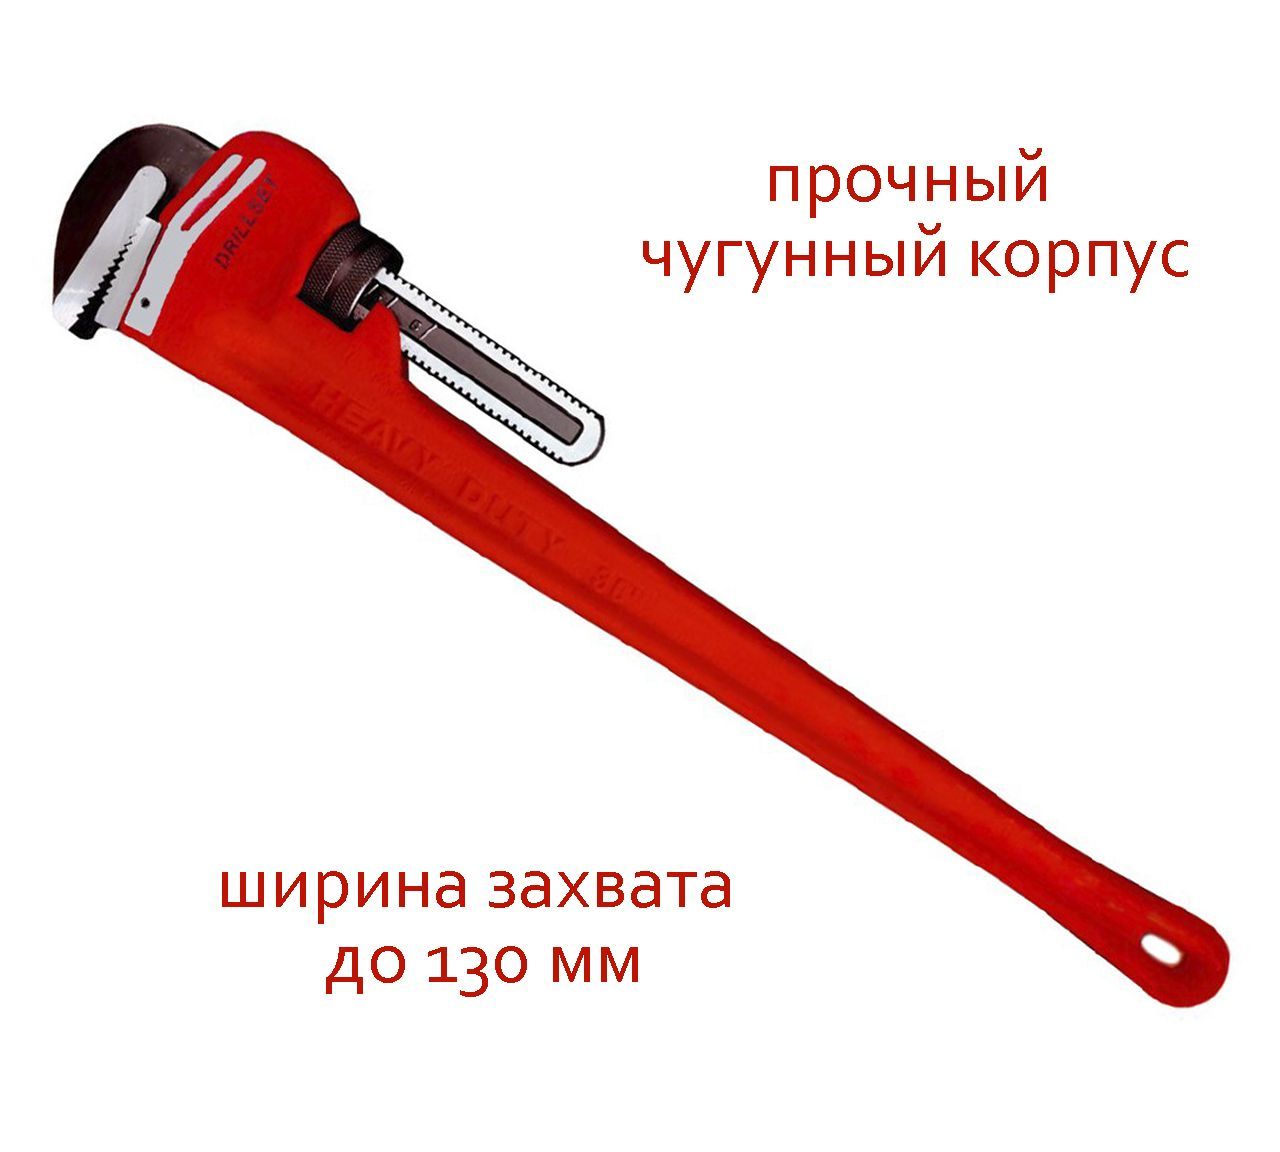 Прямой трубный ключ DRILLSET 36 DS270336, ширина захвата до 130 мм, из чугуна и стали трубный ключ с прямыми губками сибин 2 2730 2 1 5 445 мм